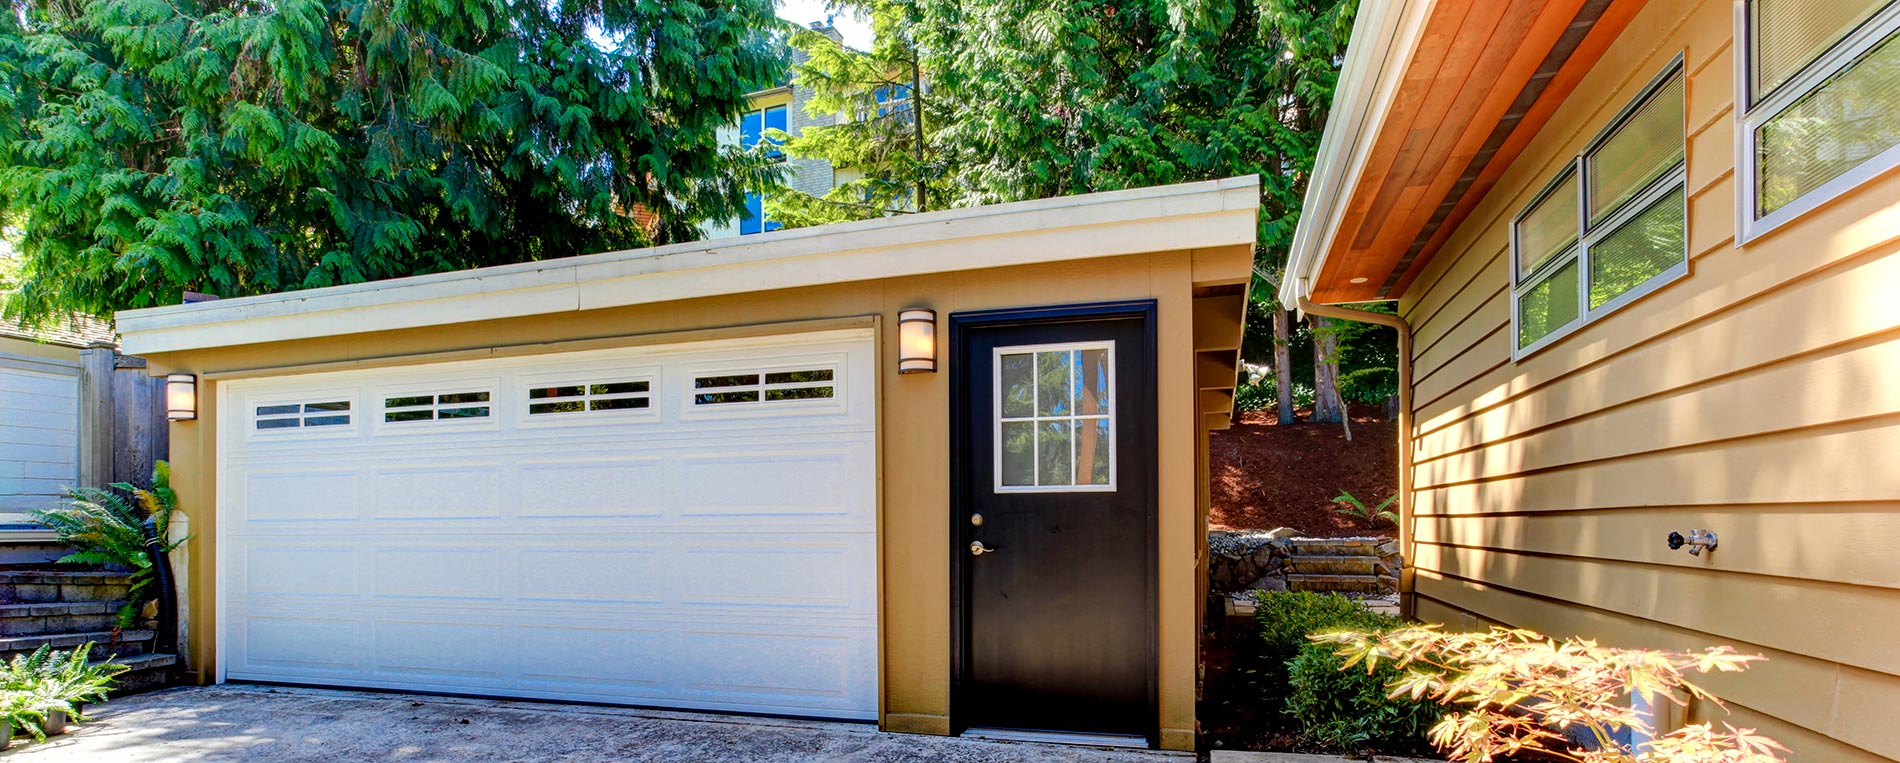 Ensure Your Garage Door Is Hurricane Resistant